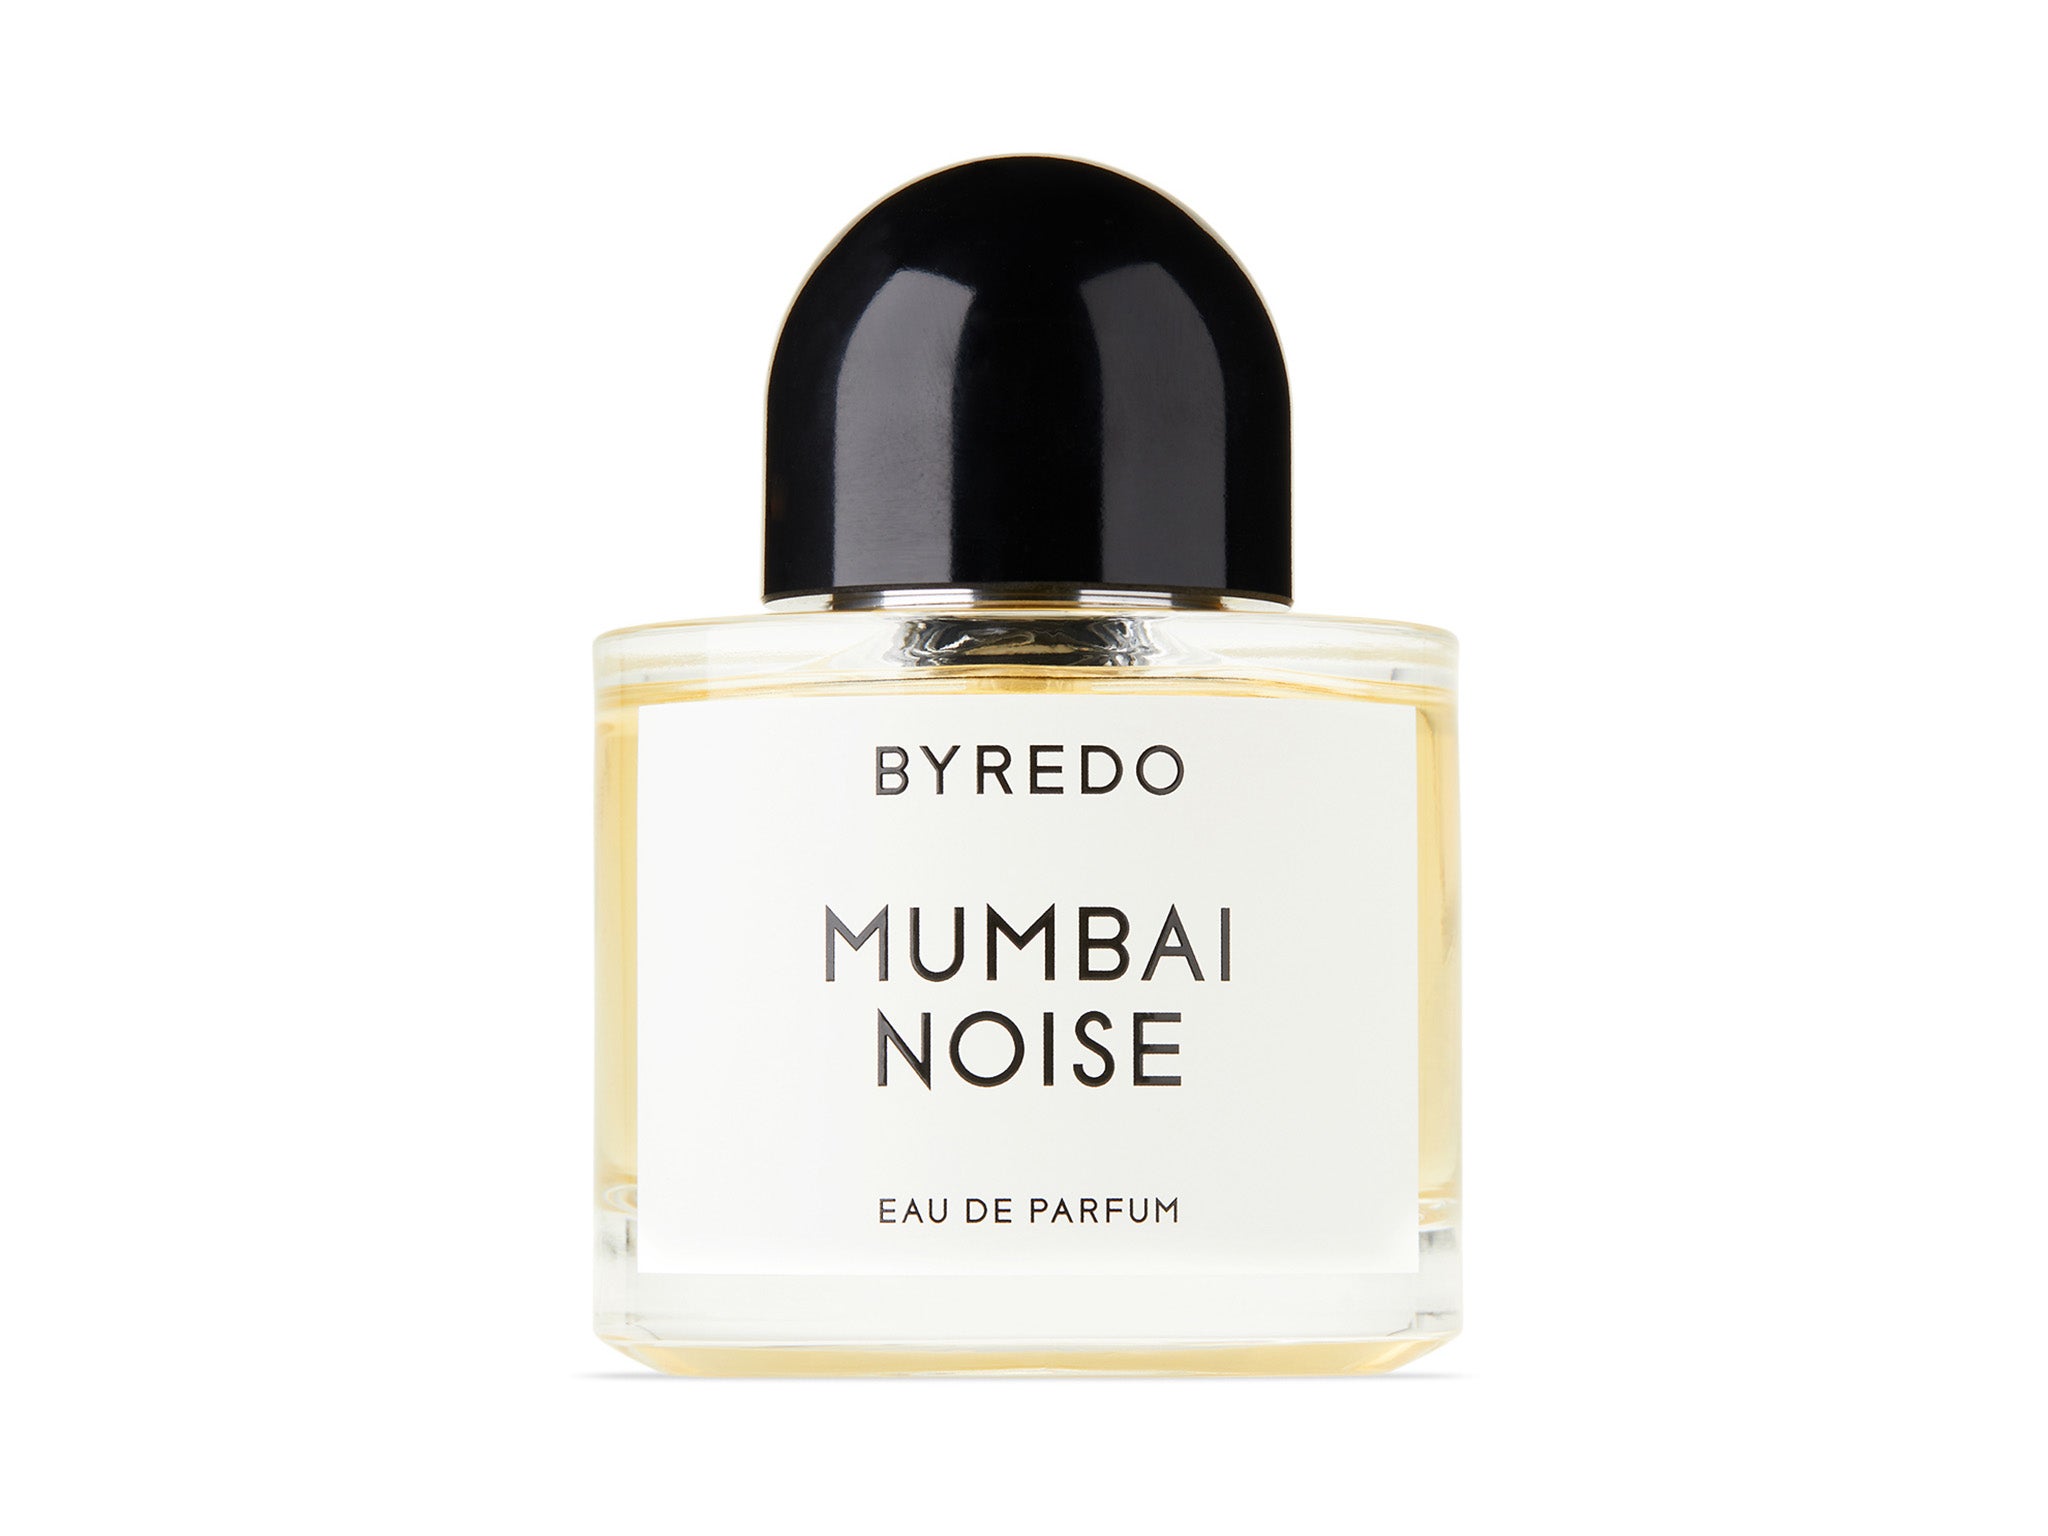 Byredo Mumbai noise